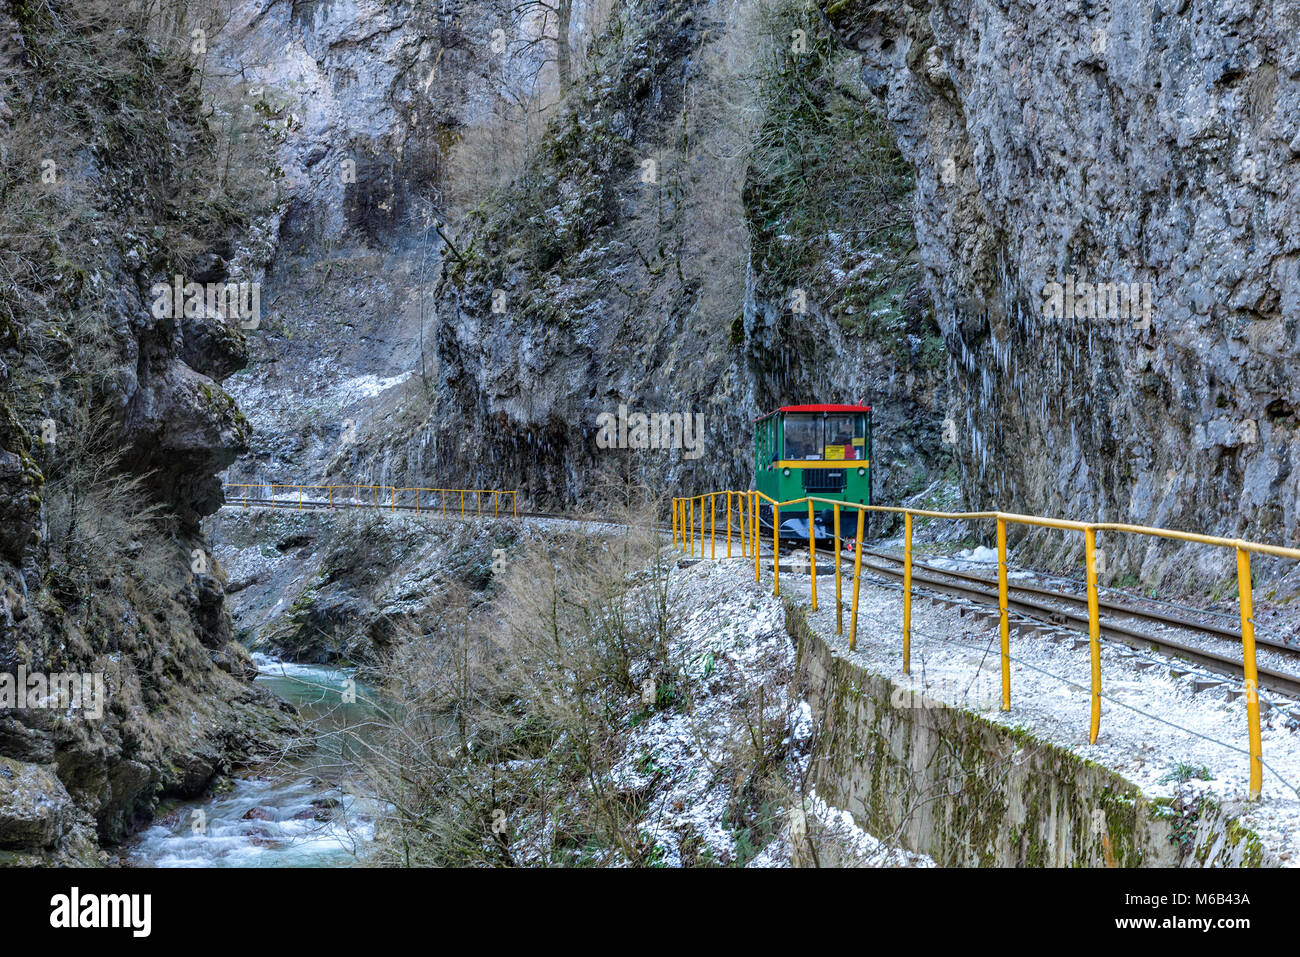 Tourist railway car rides along the mountain gorge Stock Photo